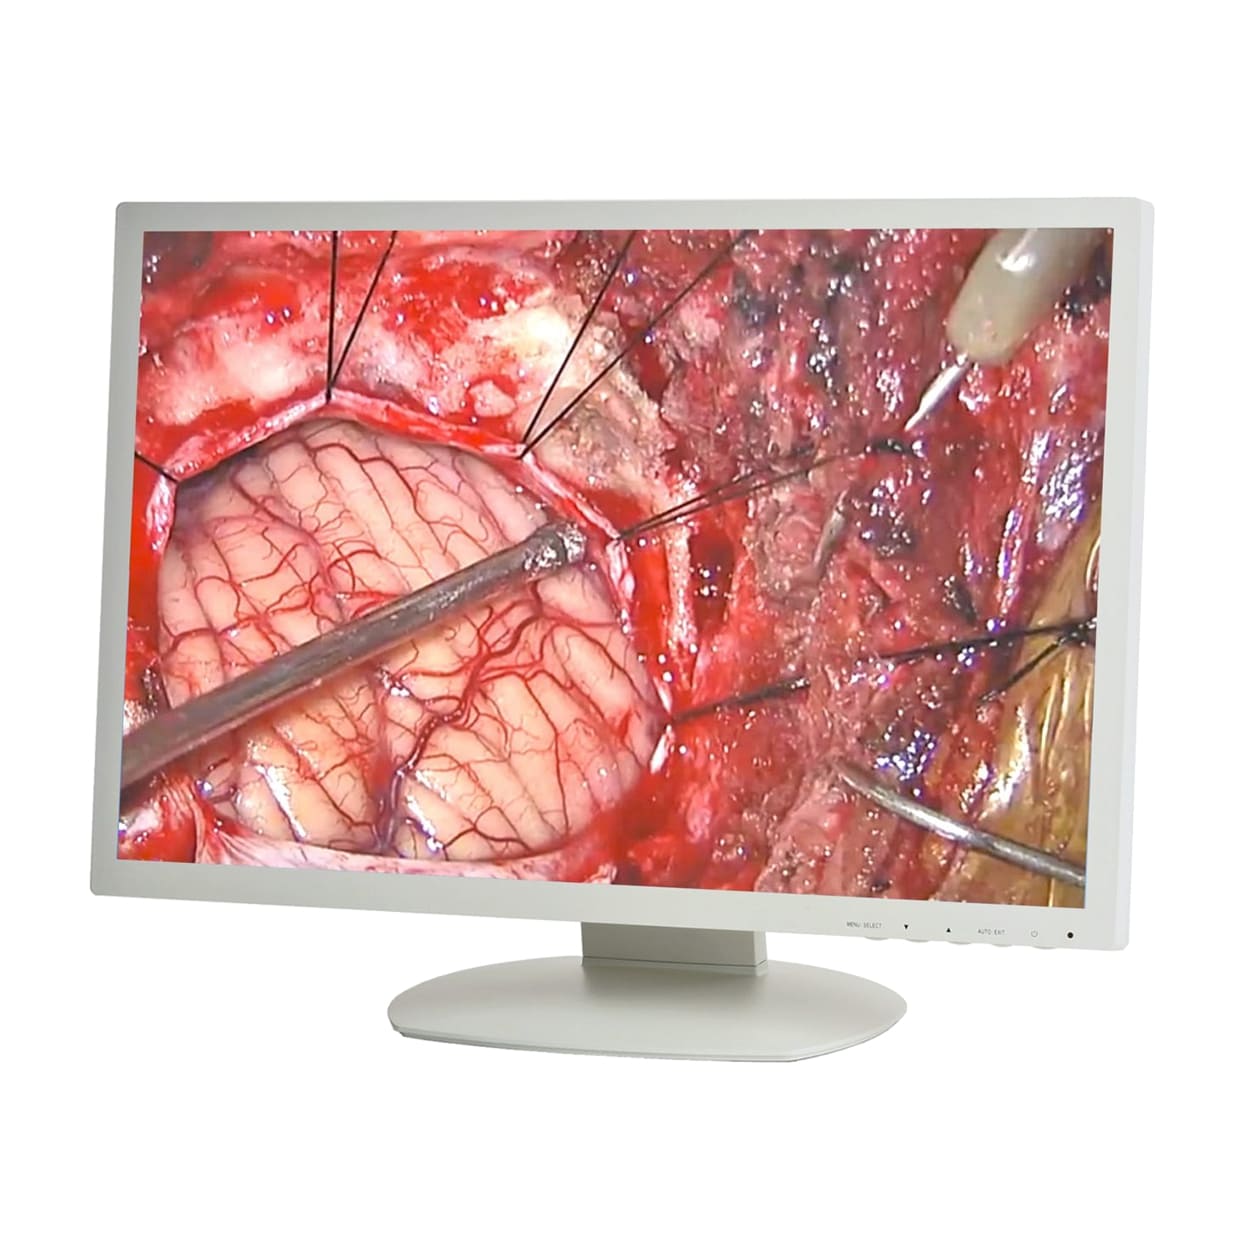 MEDICAL-GRADE LCD DISPLAYS